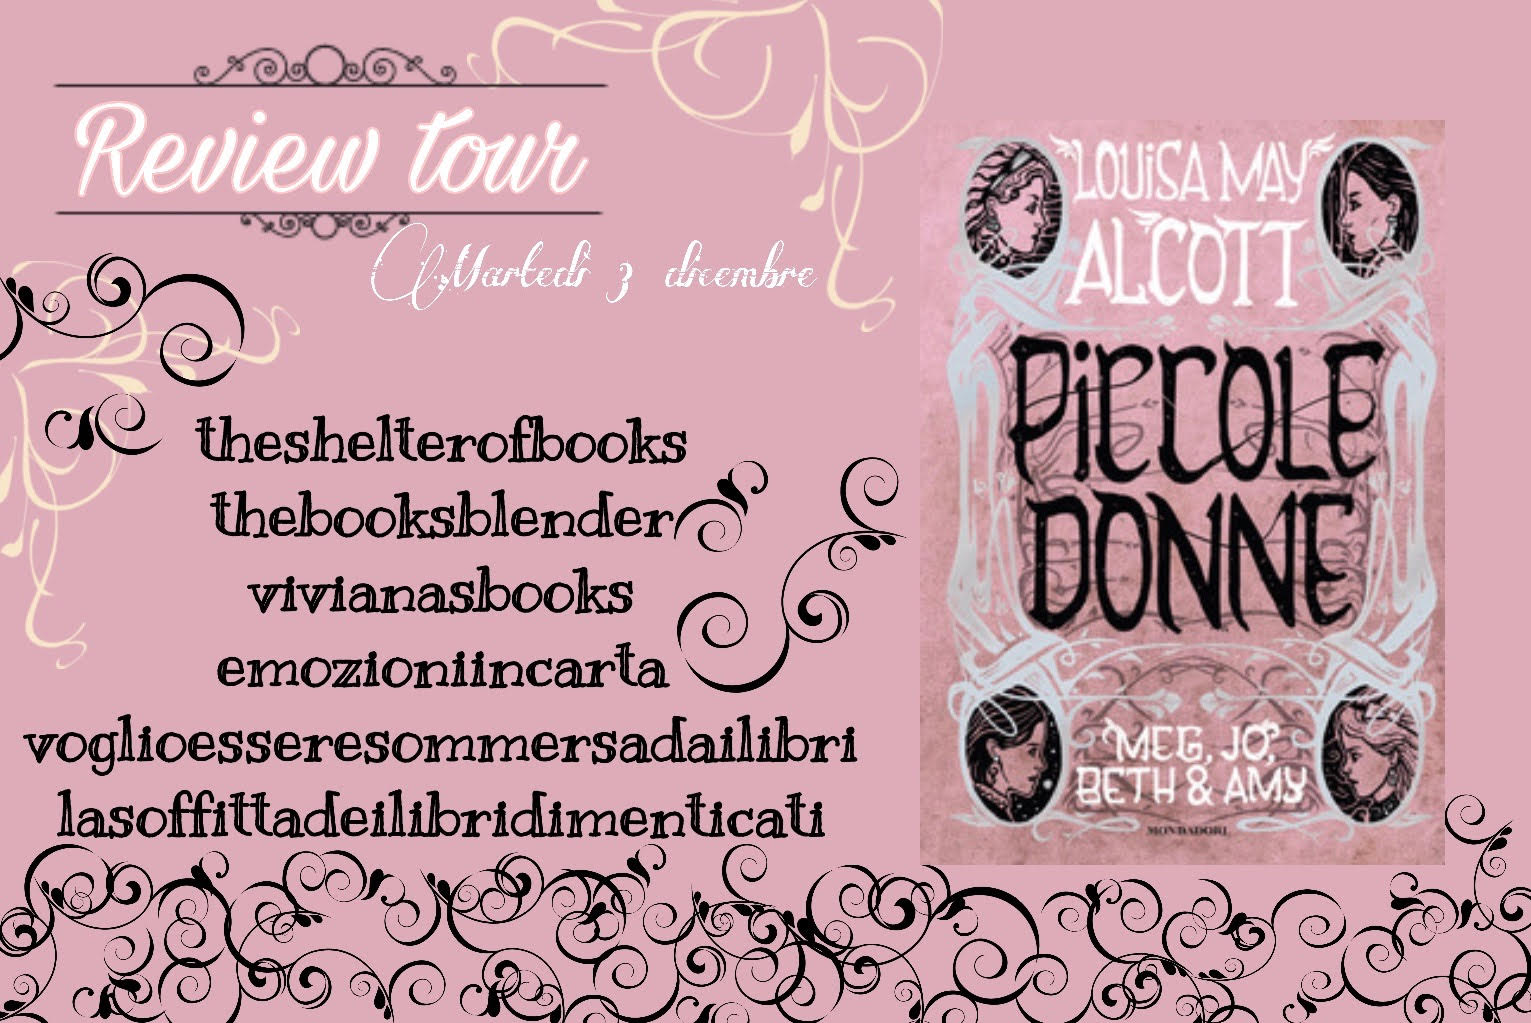 Review Tour: Piccole donne